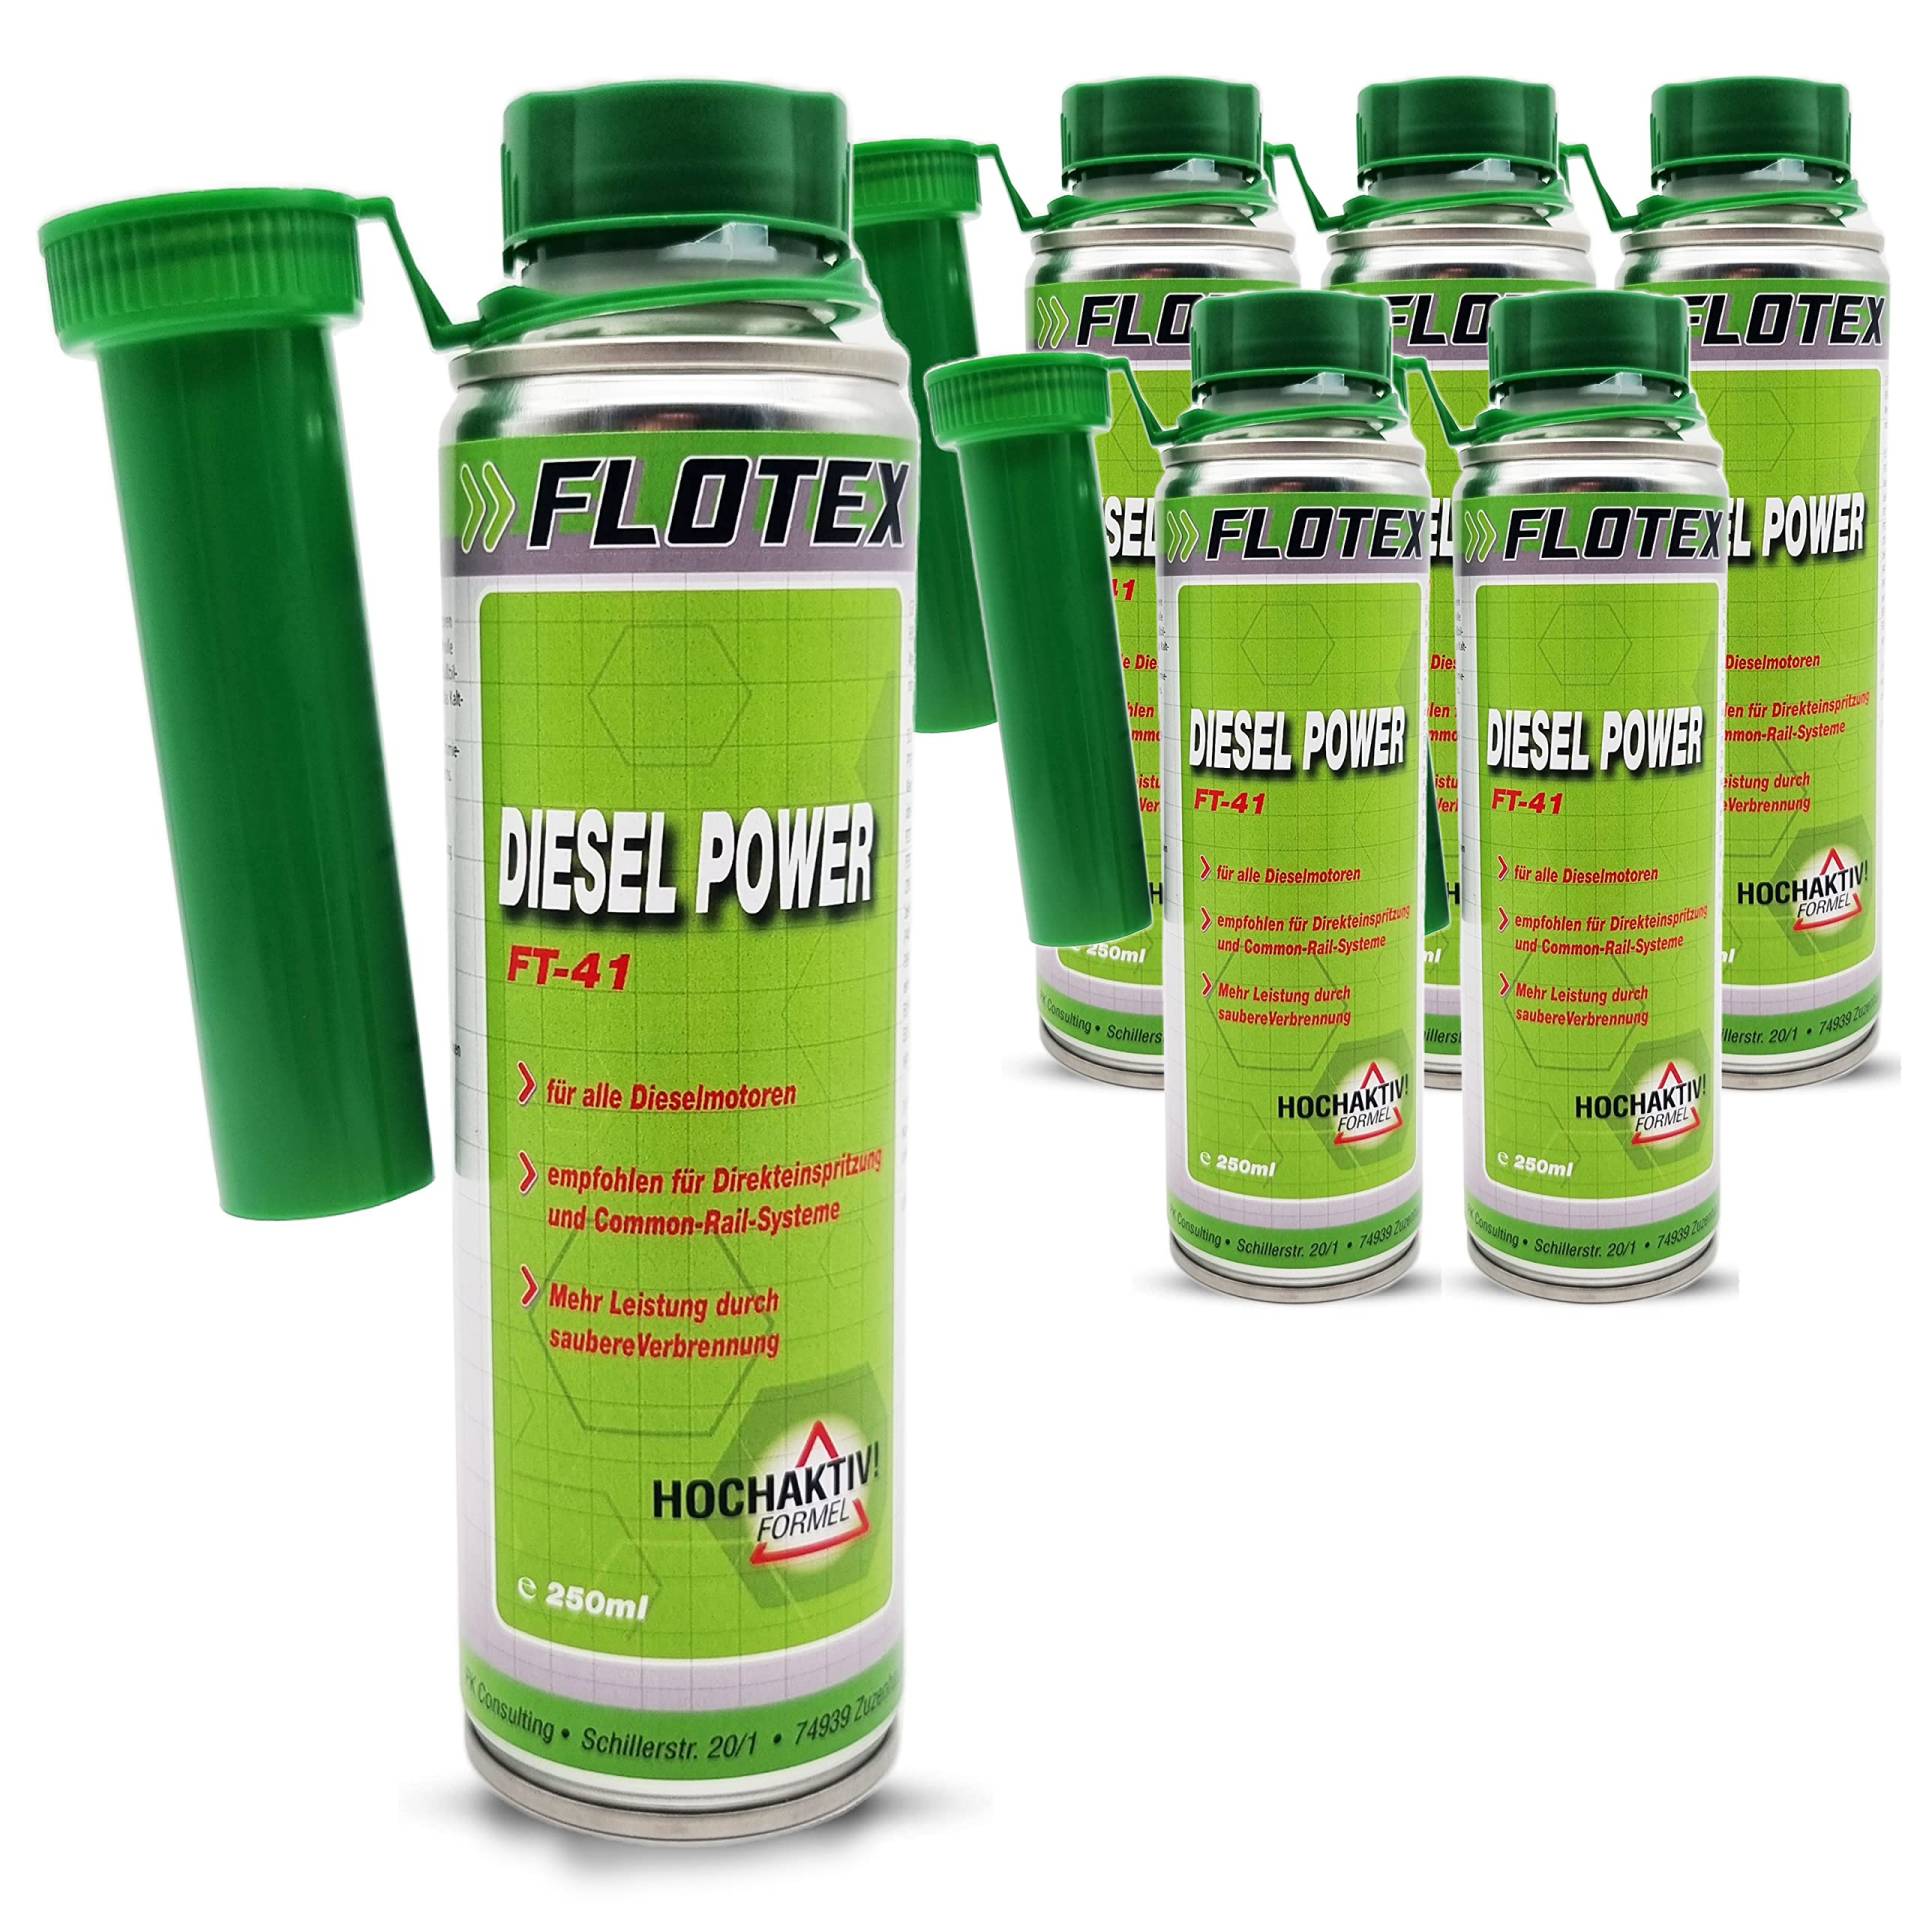 Flotex Diesel Power, 6 x 250ml Additiv Kraftstoffsystemzusatz für alle Dieselmotoren von Flotex